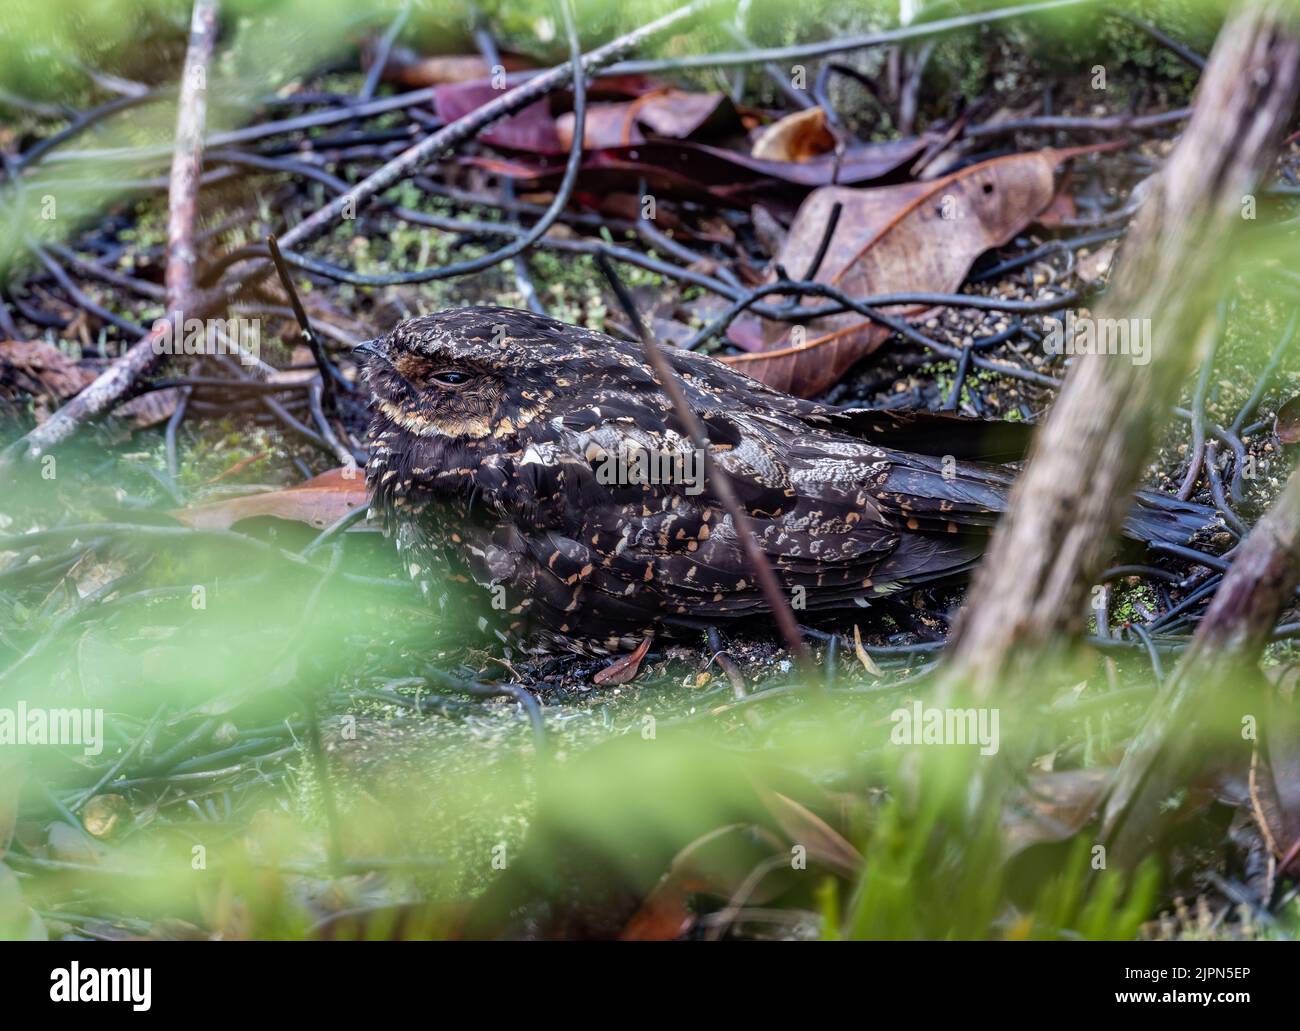 Un Nightjar diabolique endémique (Eurostopodus diabolicus) bien camouflé dans les feuilles mortes. Lore Lindu National Park, Sulawesi, Indonésie. Banque D'Images